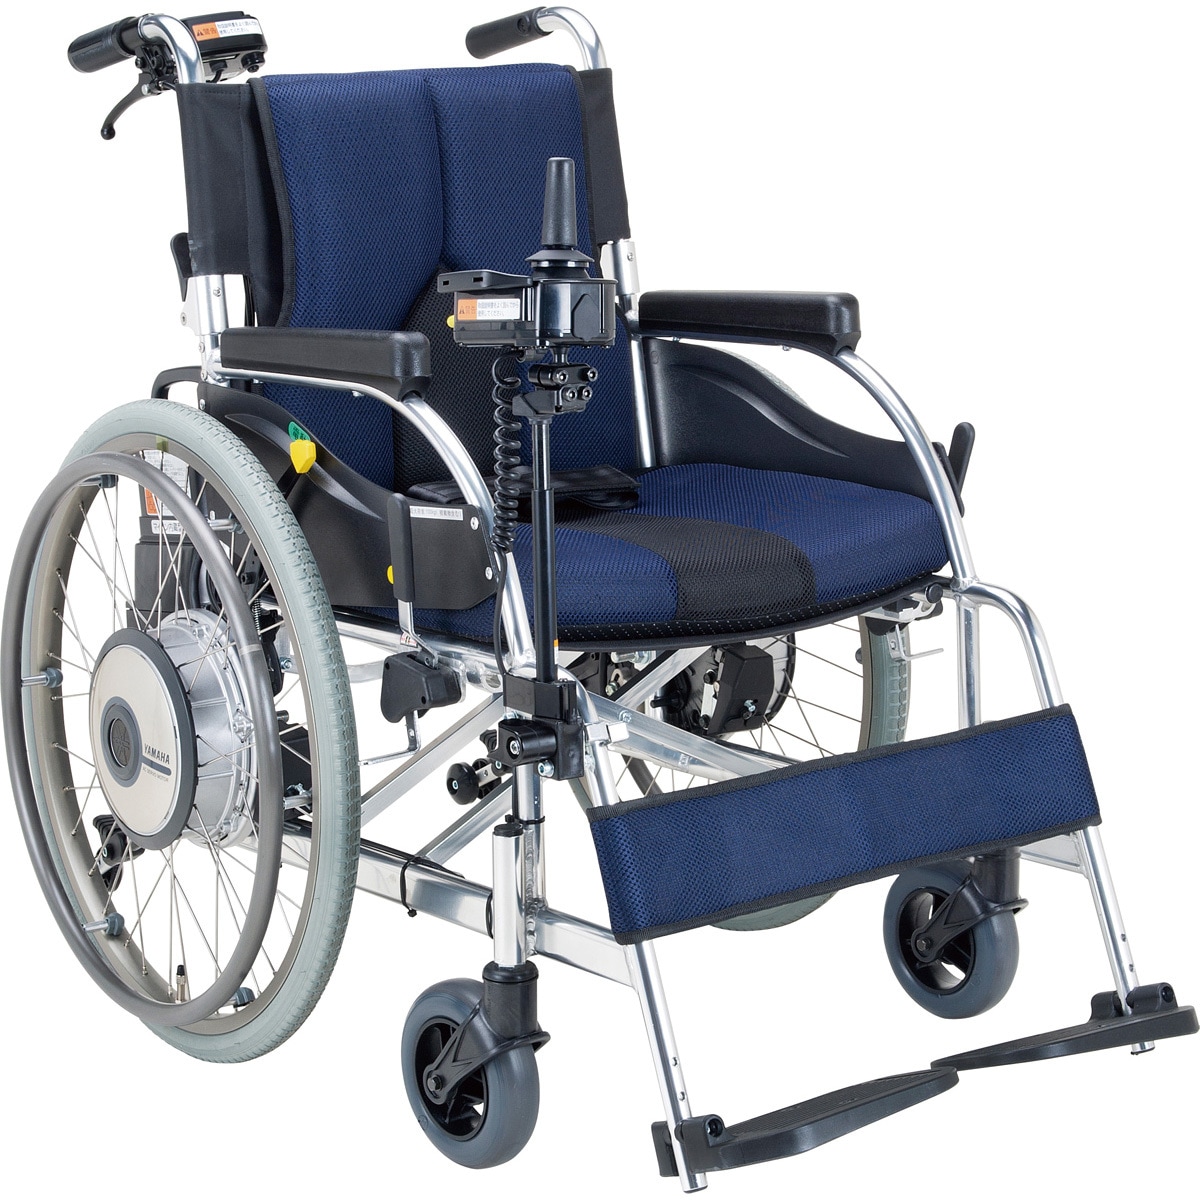 松永製作所 YAMAHA電動ユニット搭載 JWX-1 電動車椅子 - 看護/介護用品